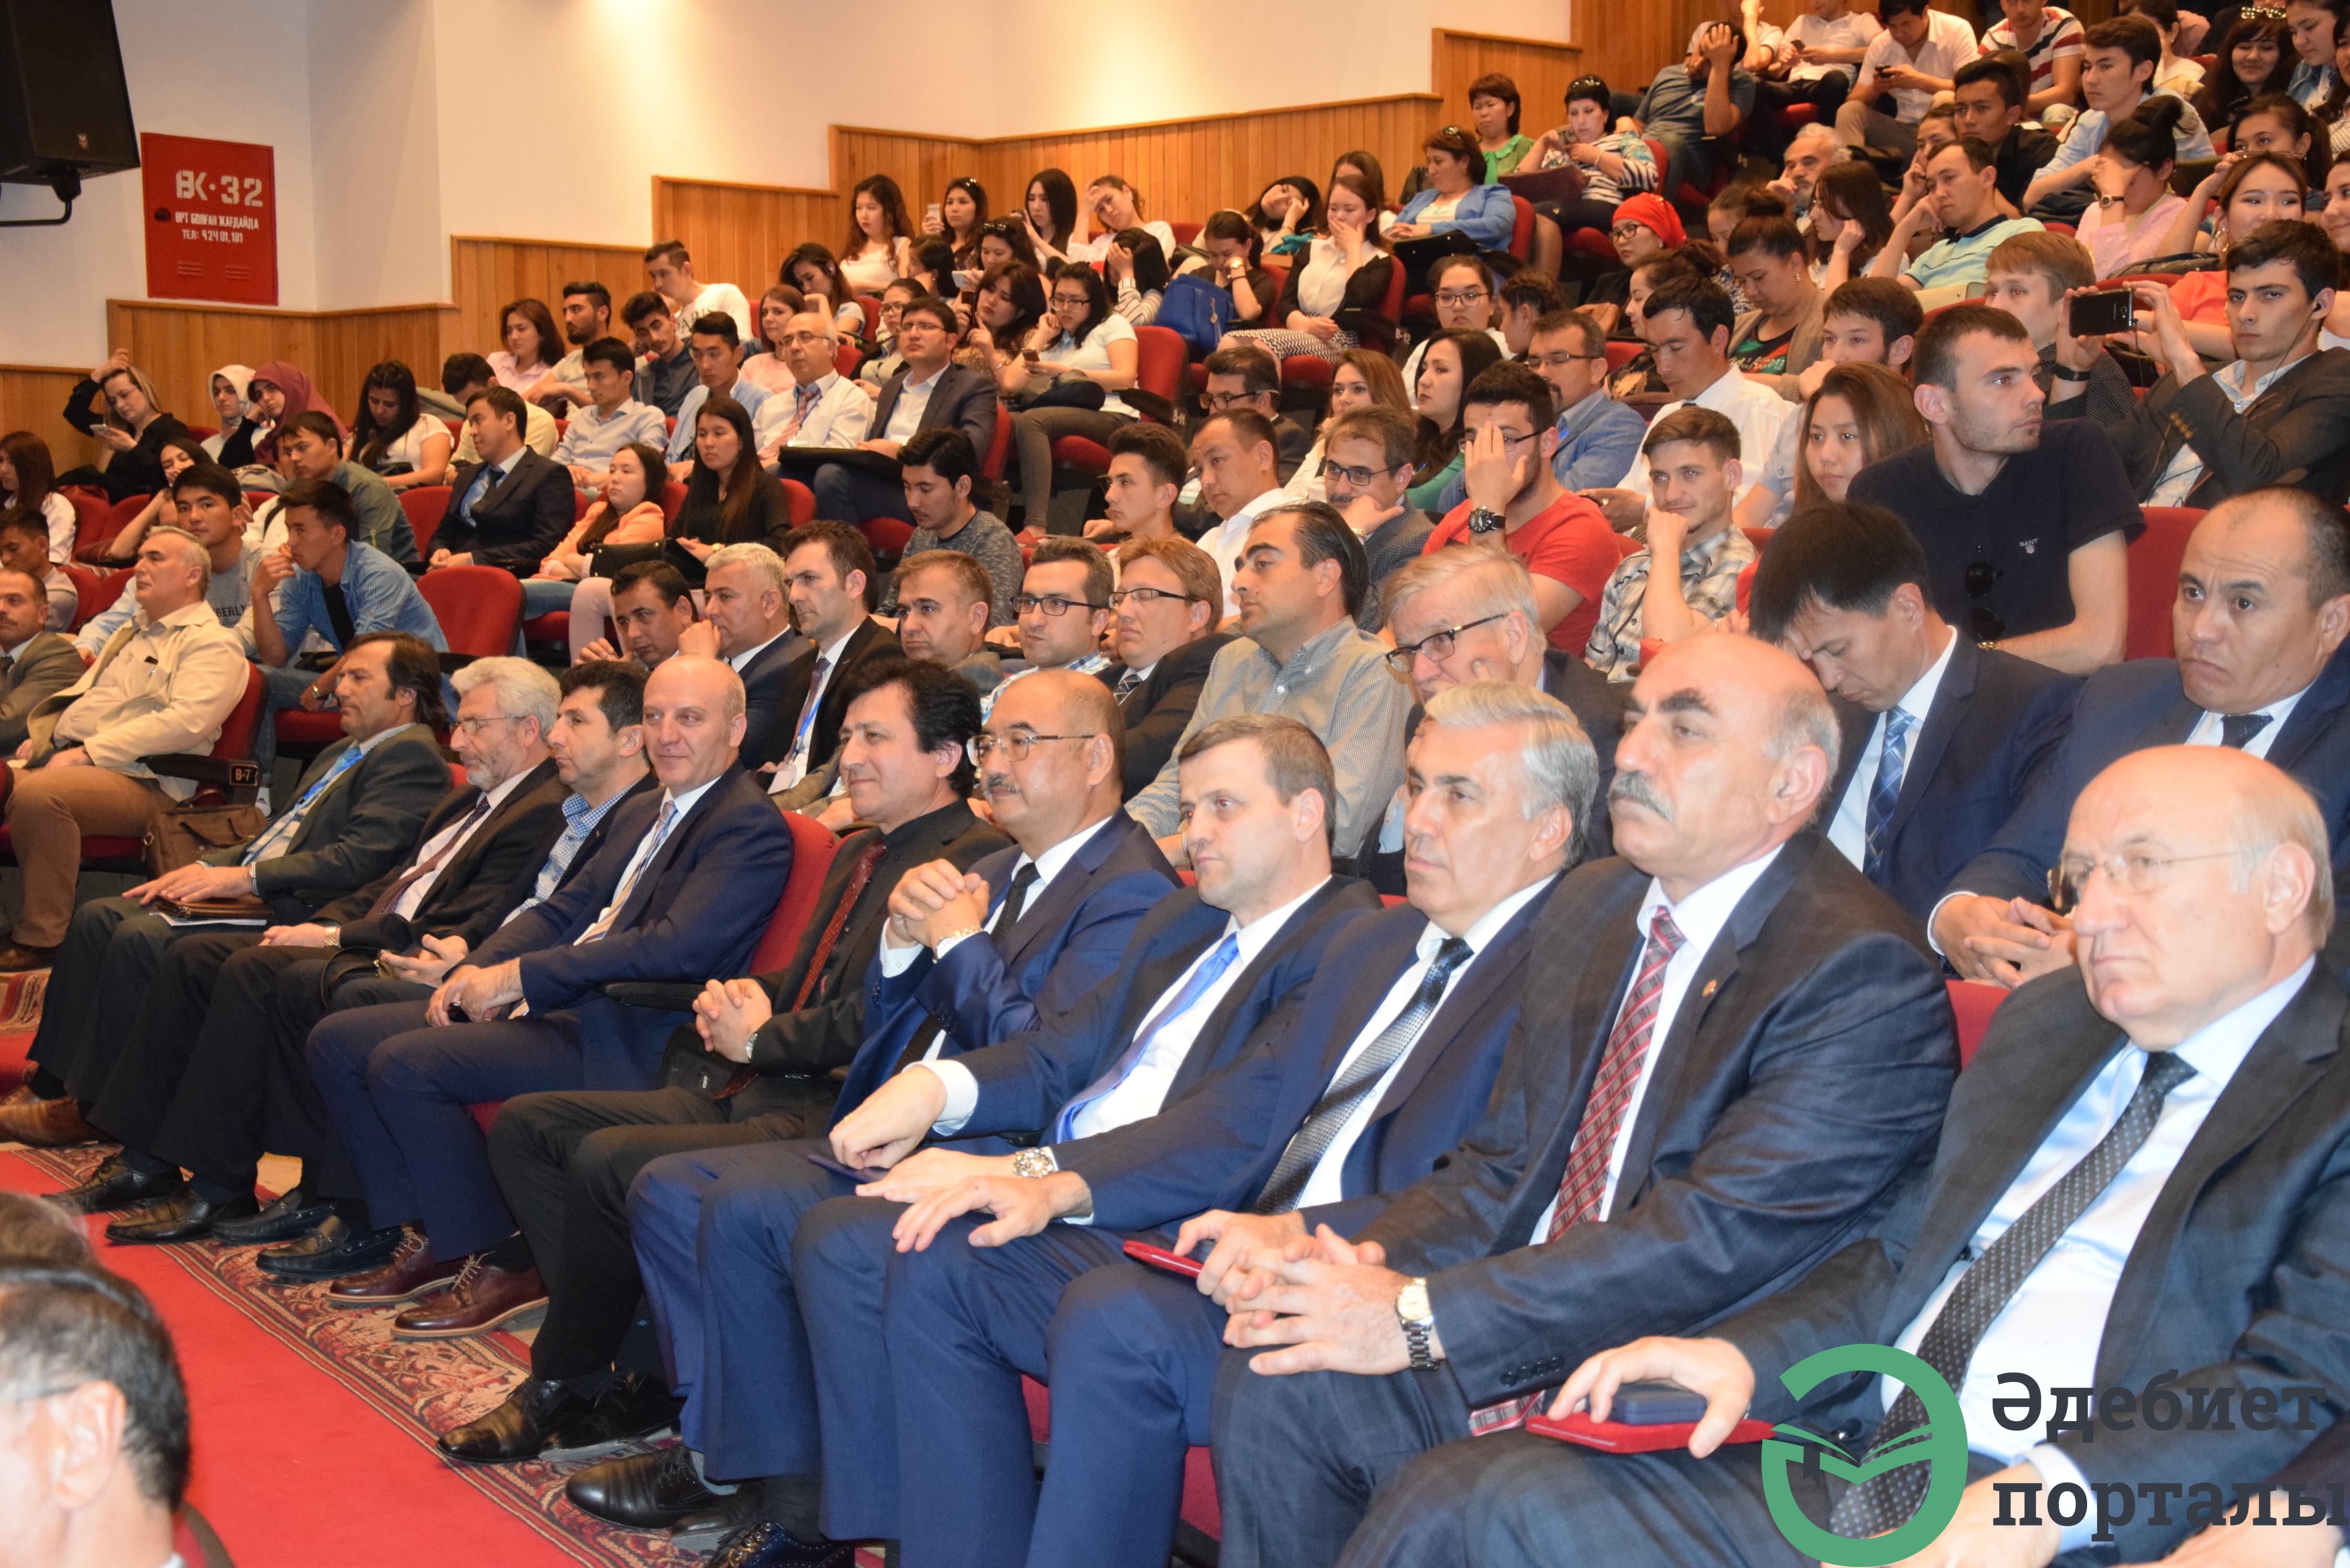 Халықаралық әлеуметтік ғылымдар конгресі: ІІІ Түркістан форумы  - фото 82 - adebiportal.kz